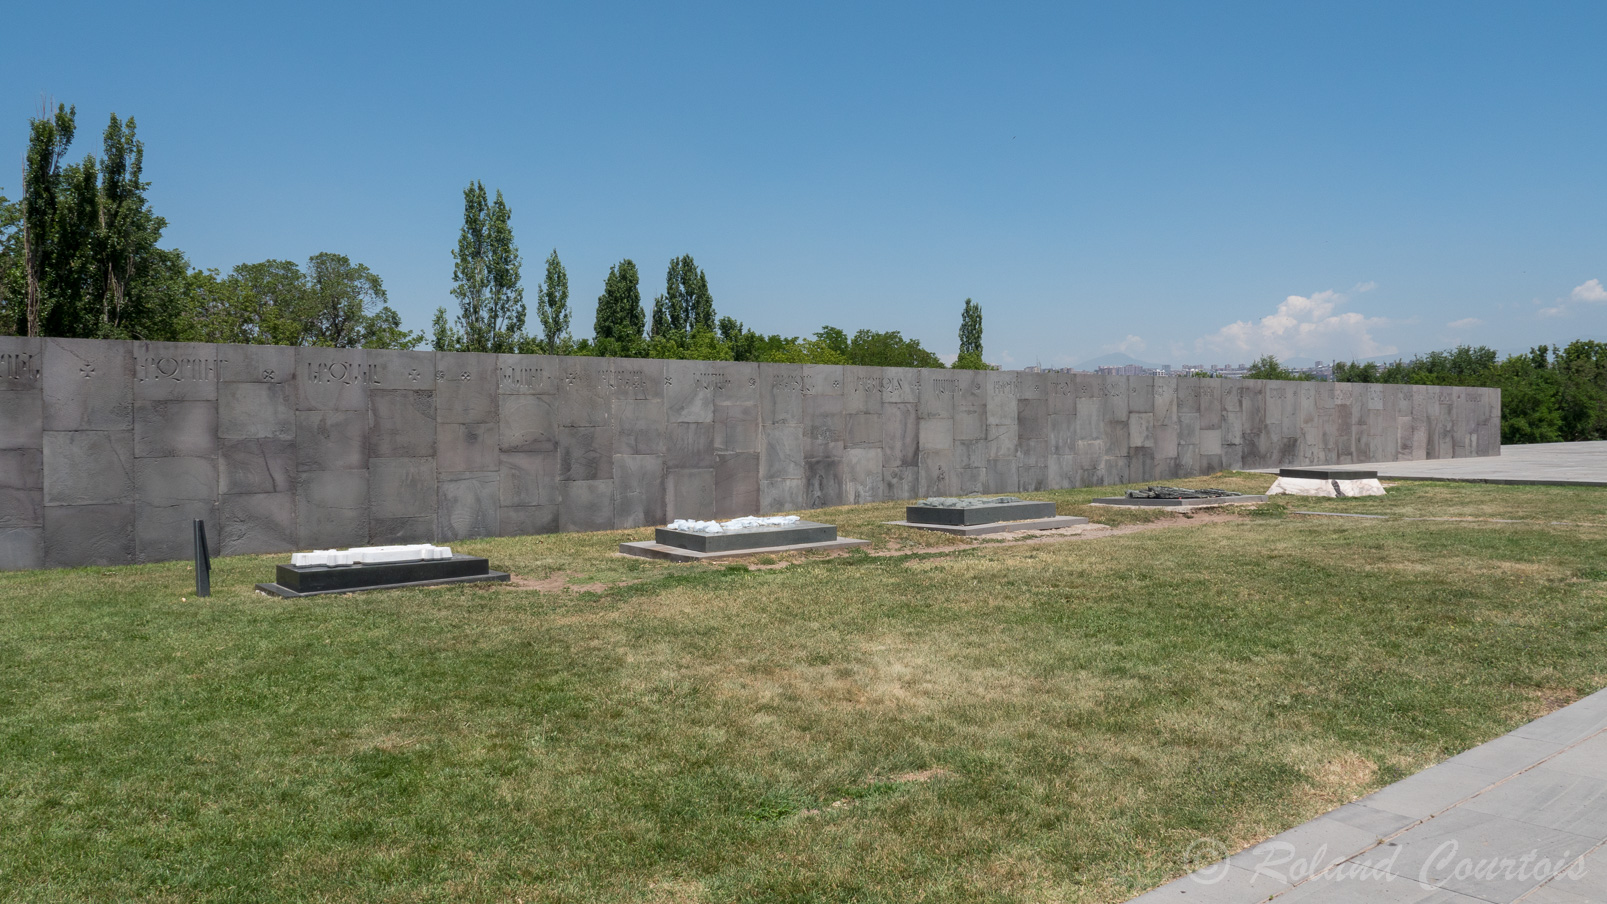 Mémorial de Tsitsernakaberd "La forteresse des hirondelles" Dédié aux victimes du génocide de 1915. Ce mur porte les inscriptions des principaux villages arméniens de l'empire ottoman dans lesquels ont eu lieu les massacres.